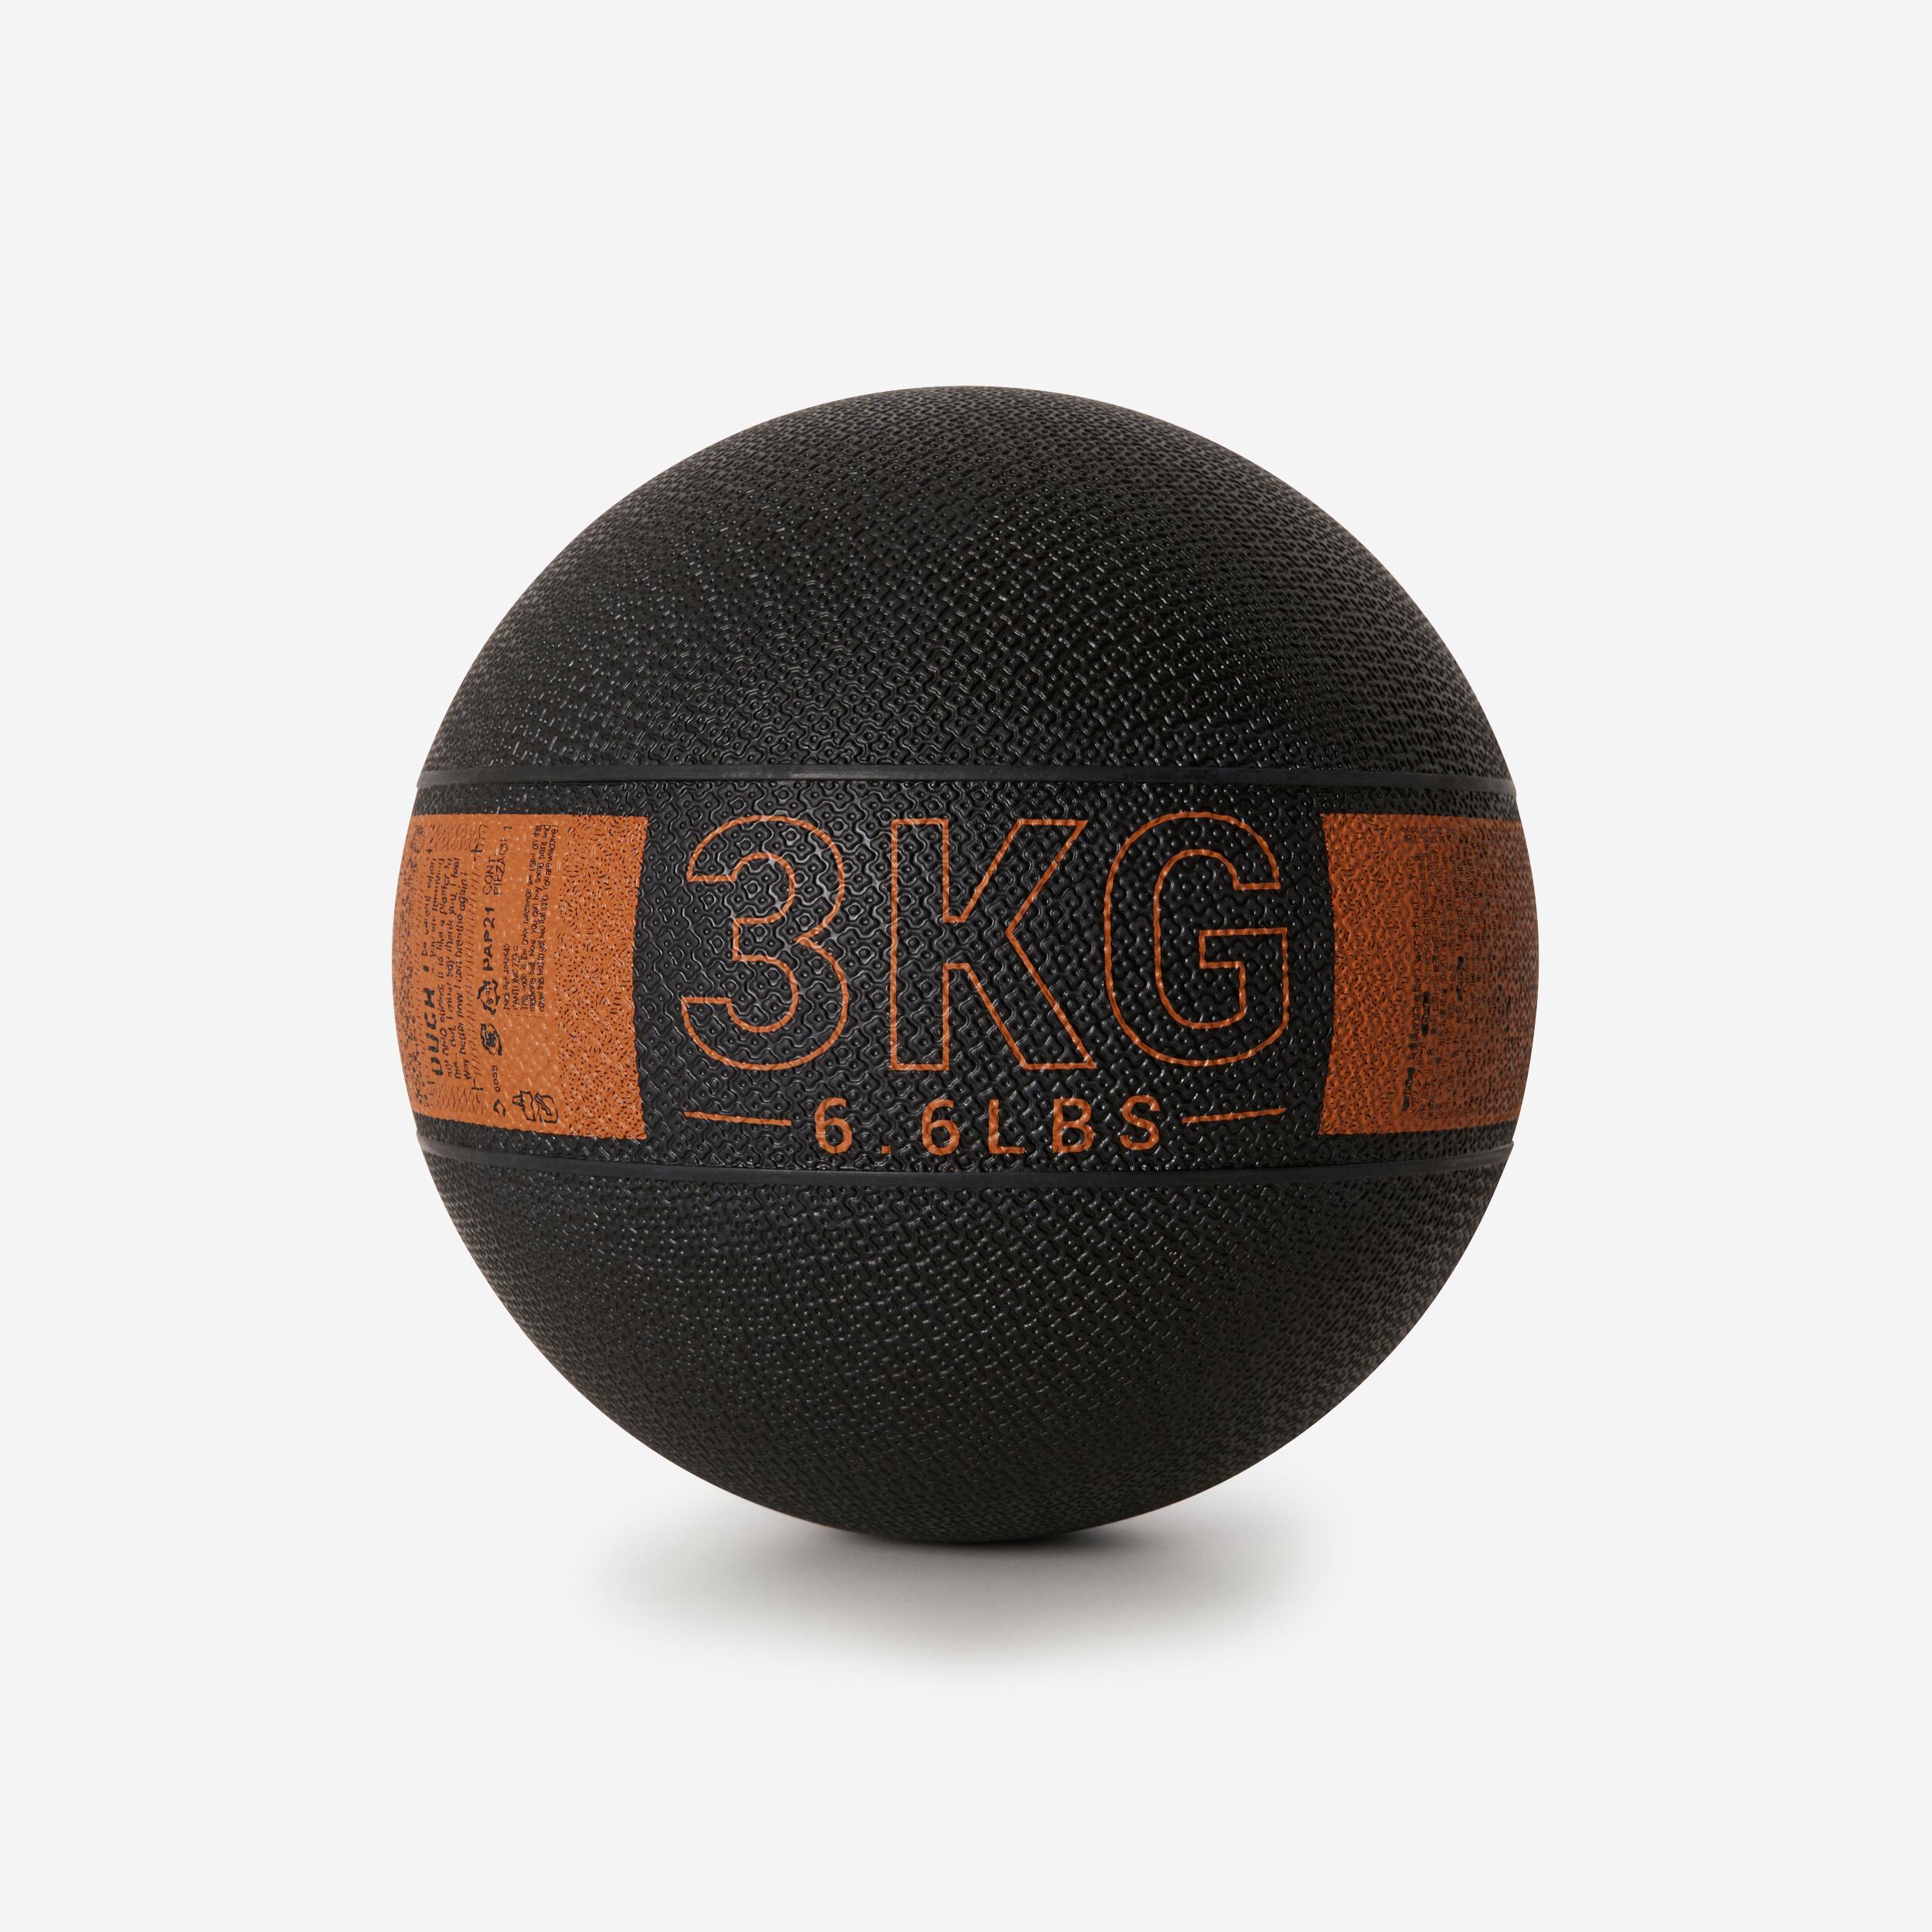 DOMYOS 3 kg Rubber Medicine Ball - Black/Orange